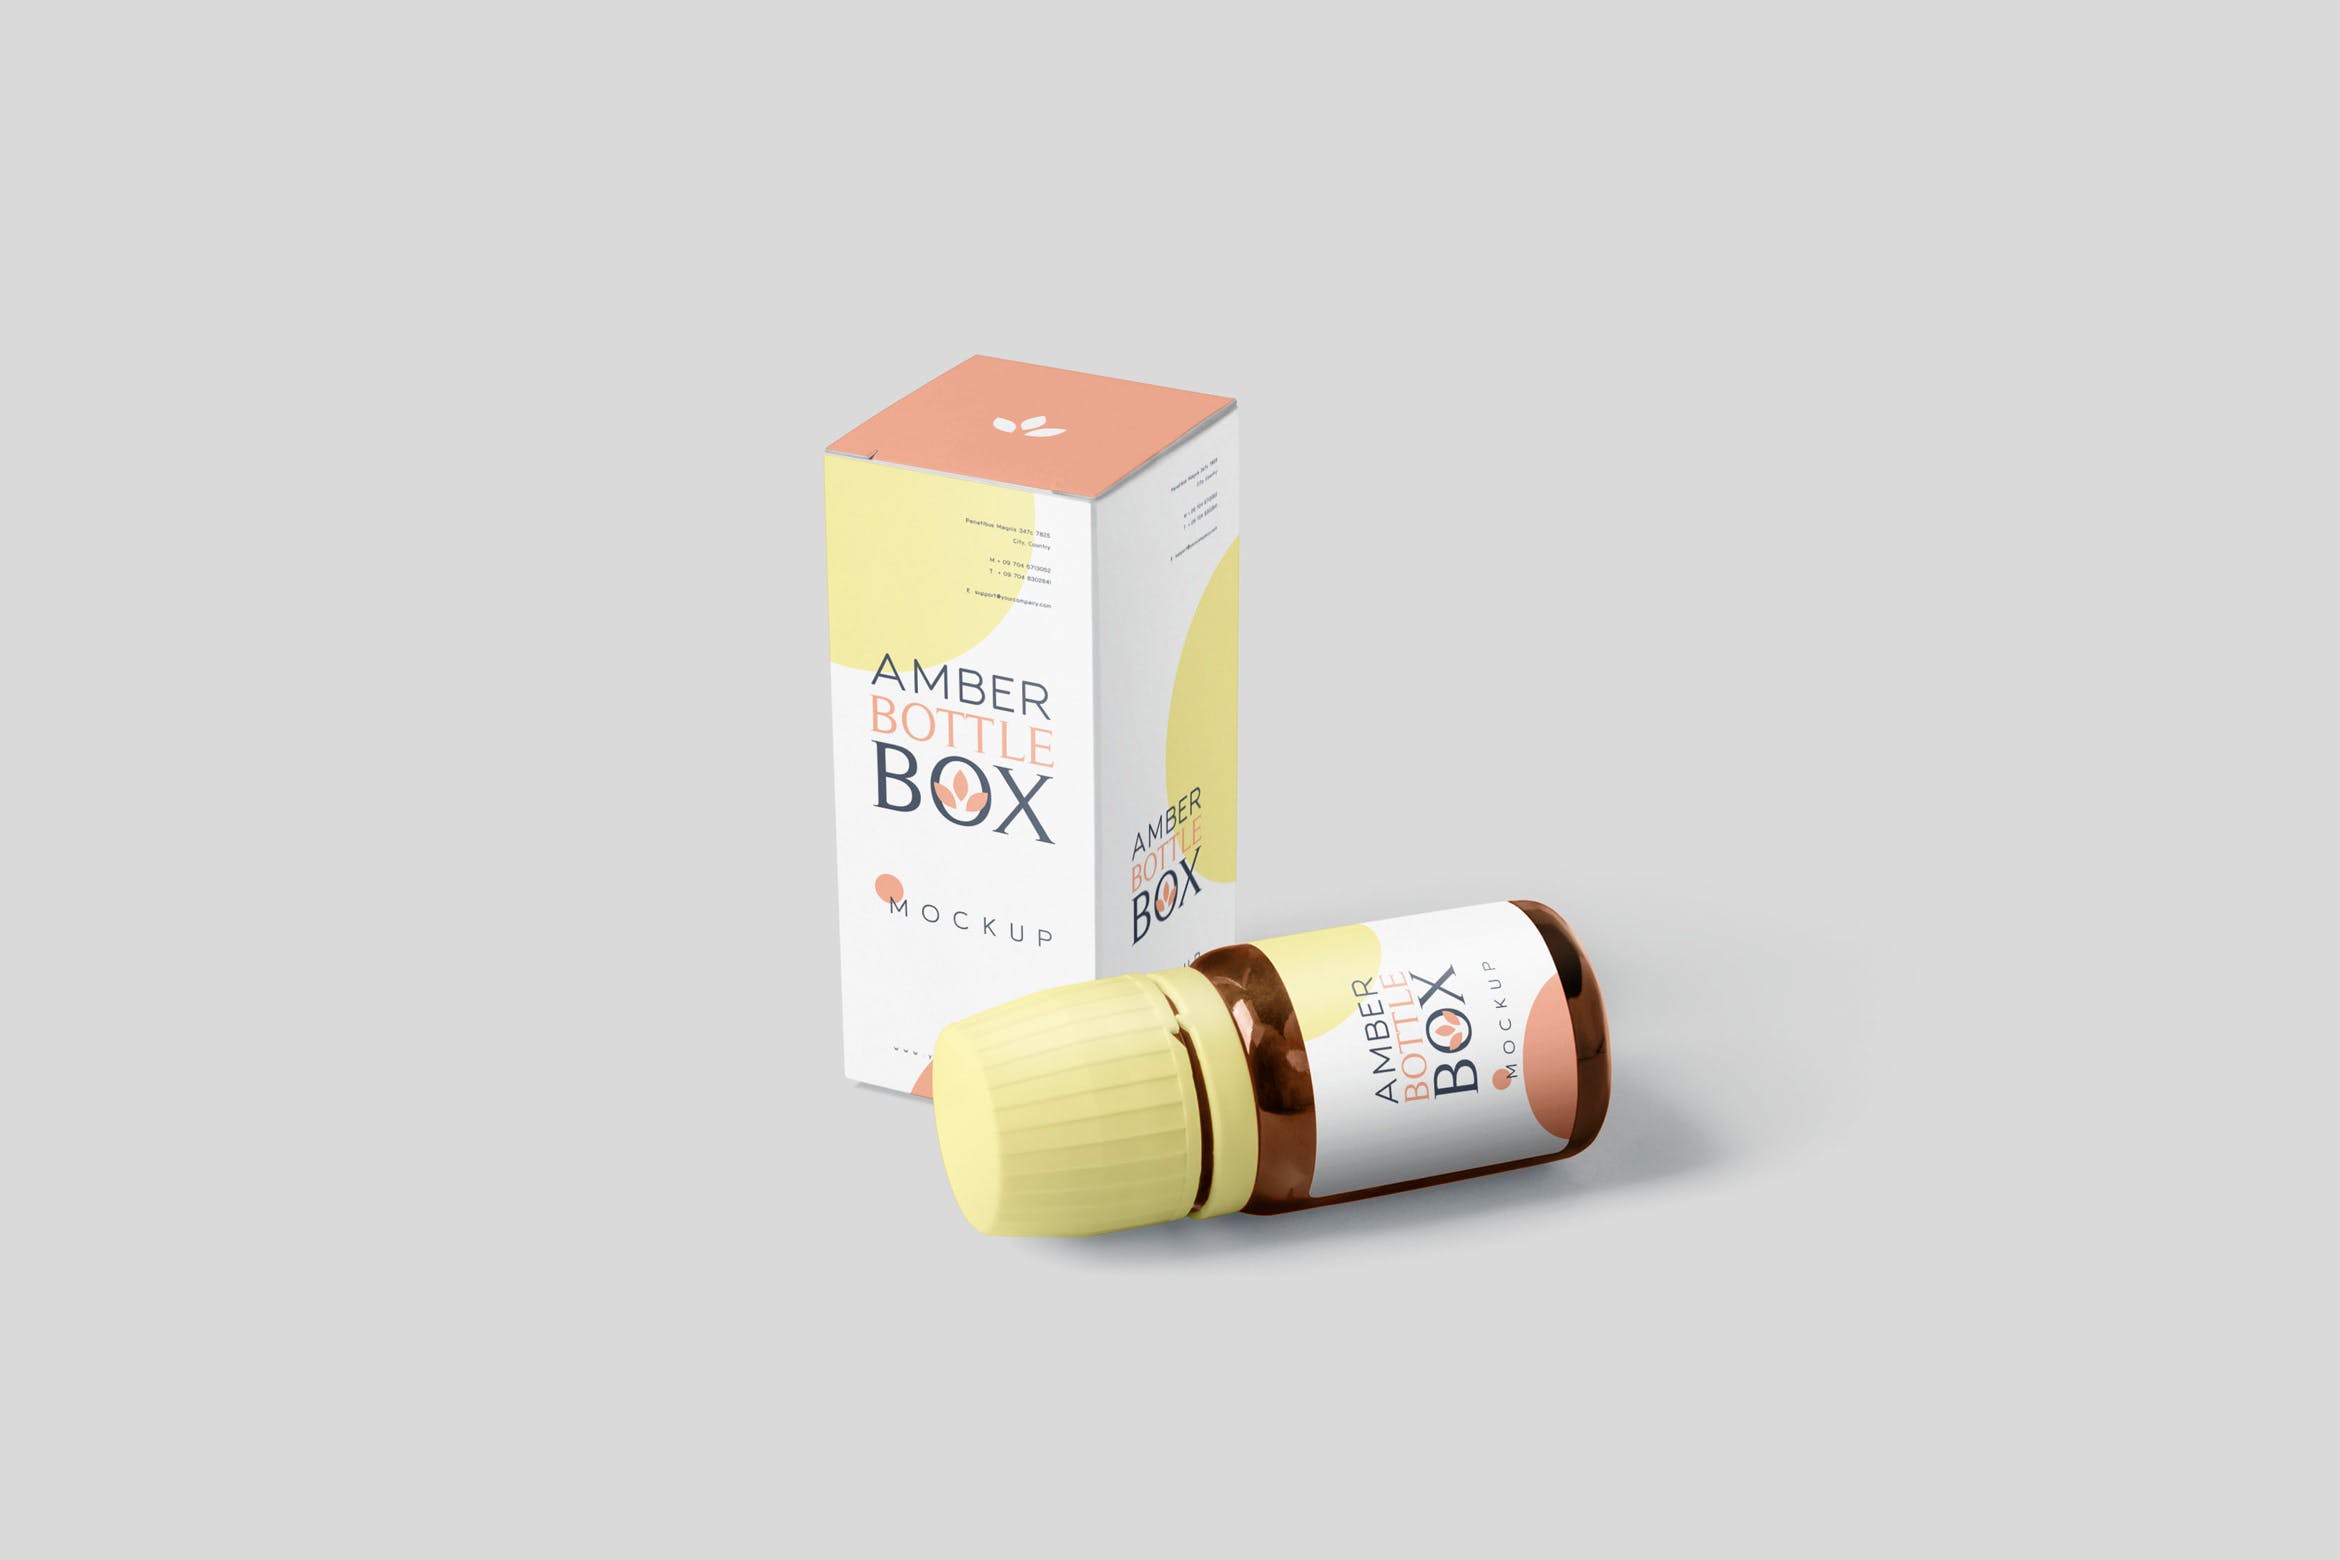 药物瓶&包装纸盒设计图非凡图库精选模板 Amber Bottle Box Mockup Set插图